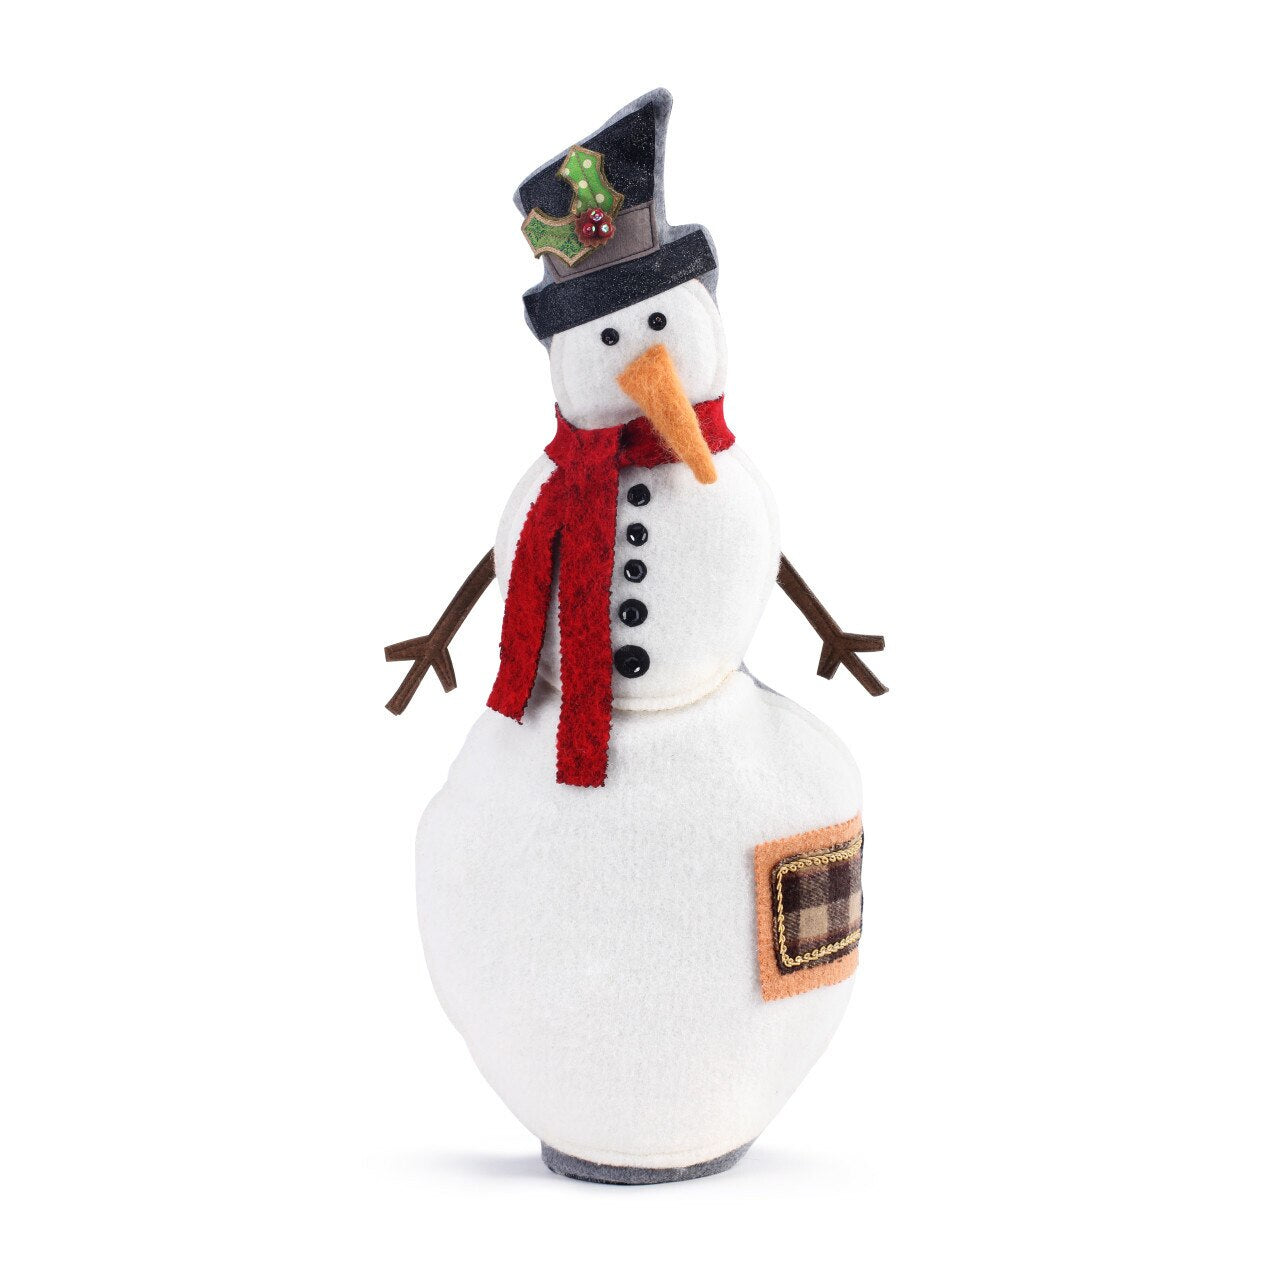 Mr. Frosty Snowman Plush